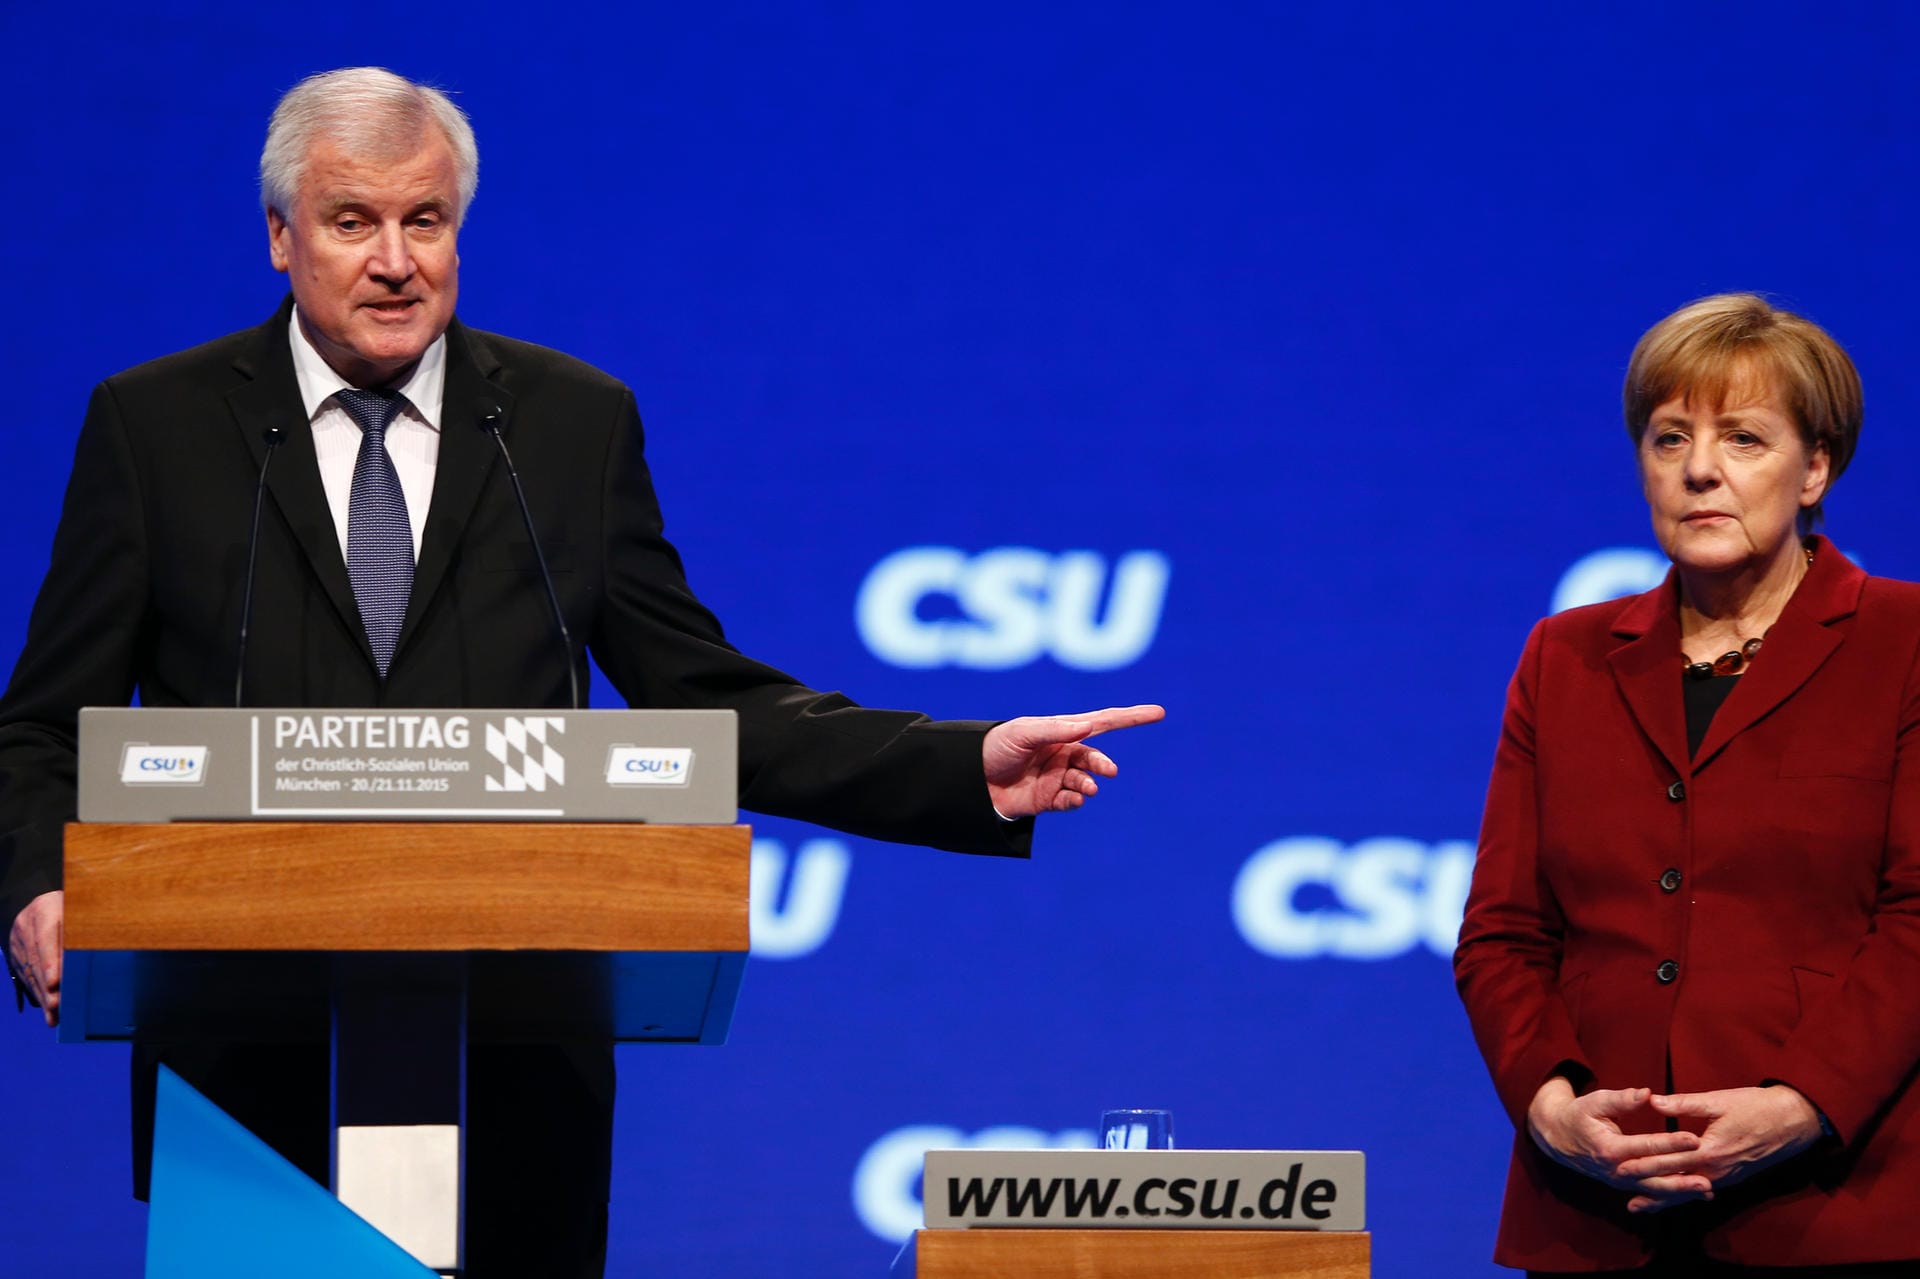 Beim CSU-Parteitag behandelt der damalige Parteichef Horst Seehofer die Kanzlerin im November 2015 wie ein dummes Mädchen.